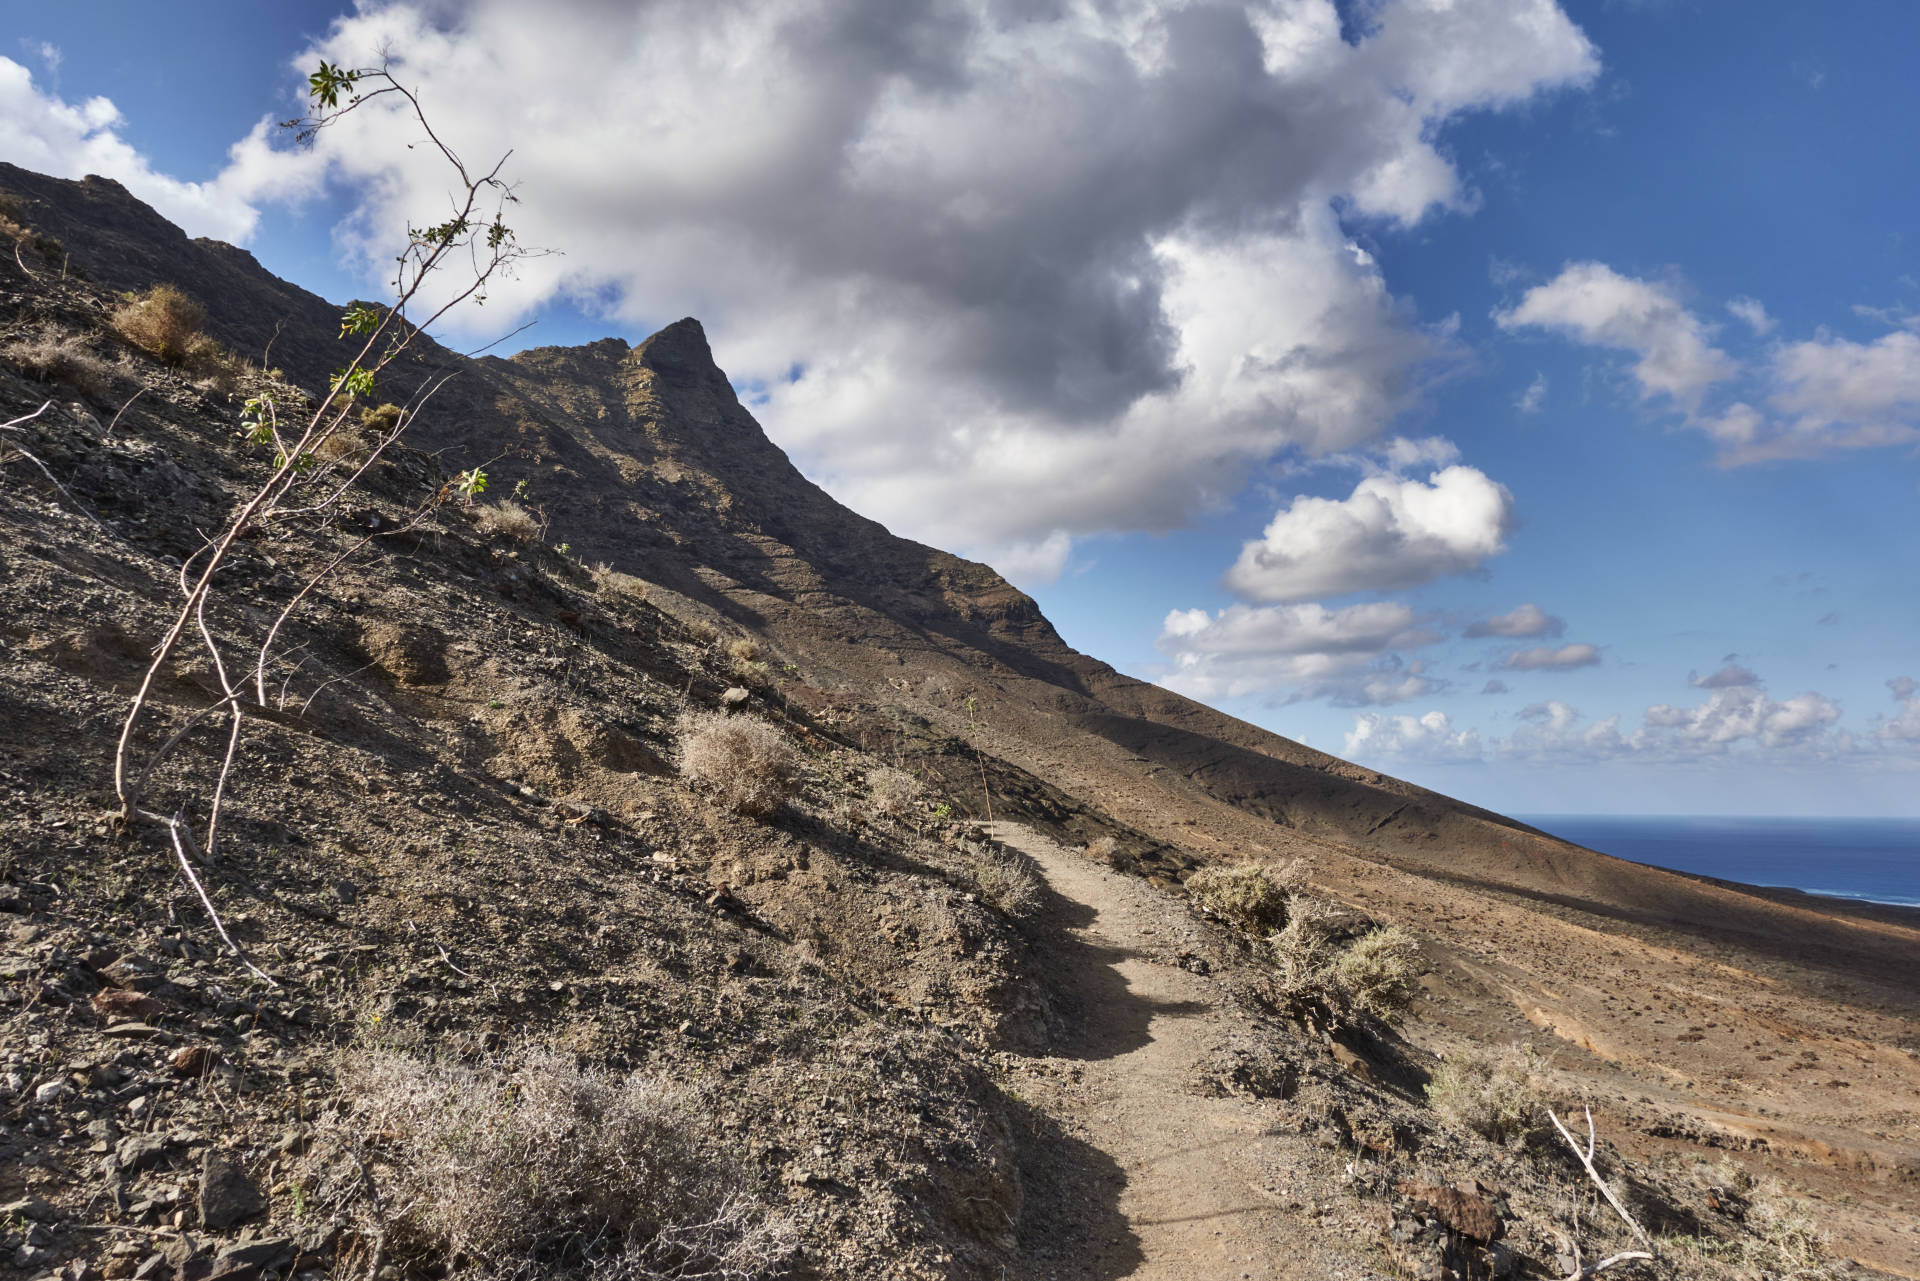 Wanderung Gran Valle - Cofete: Abstieg nach Cofete und Blick auf den imposanten Fraile (688 m).